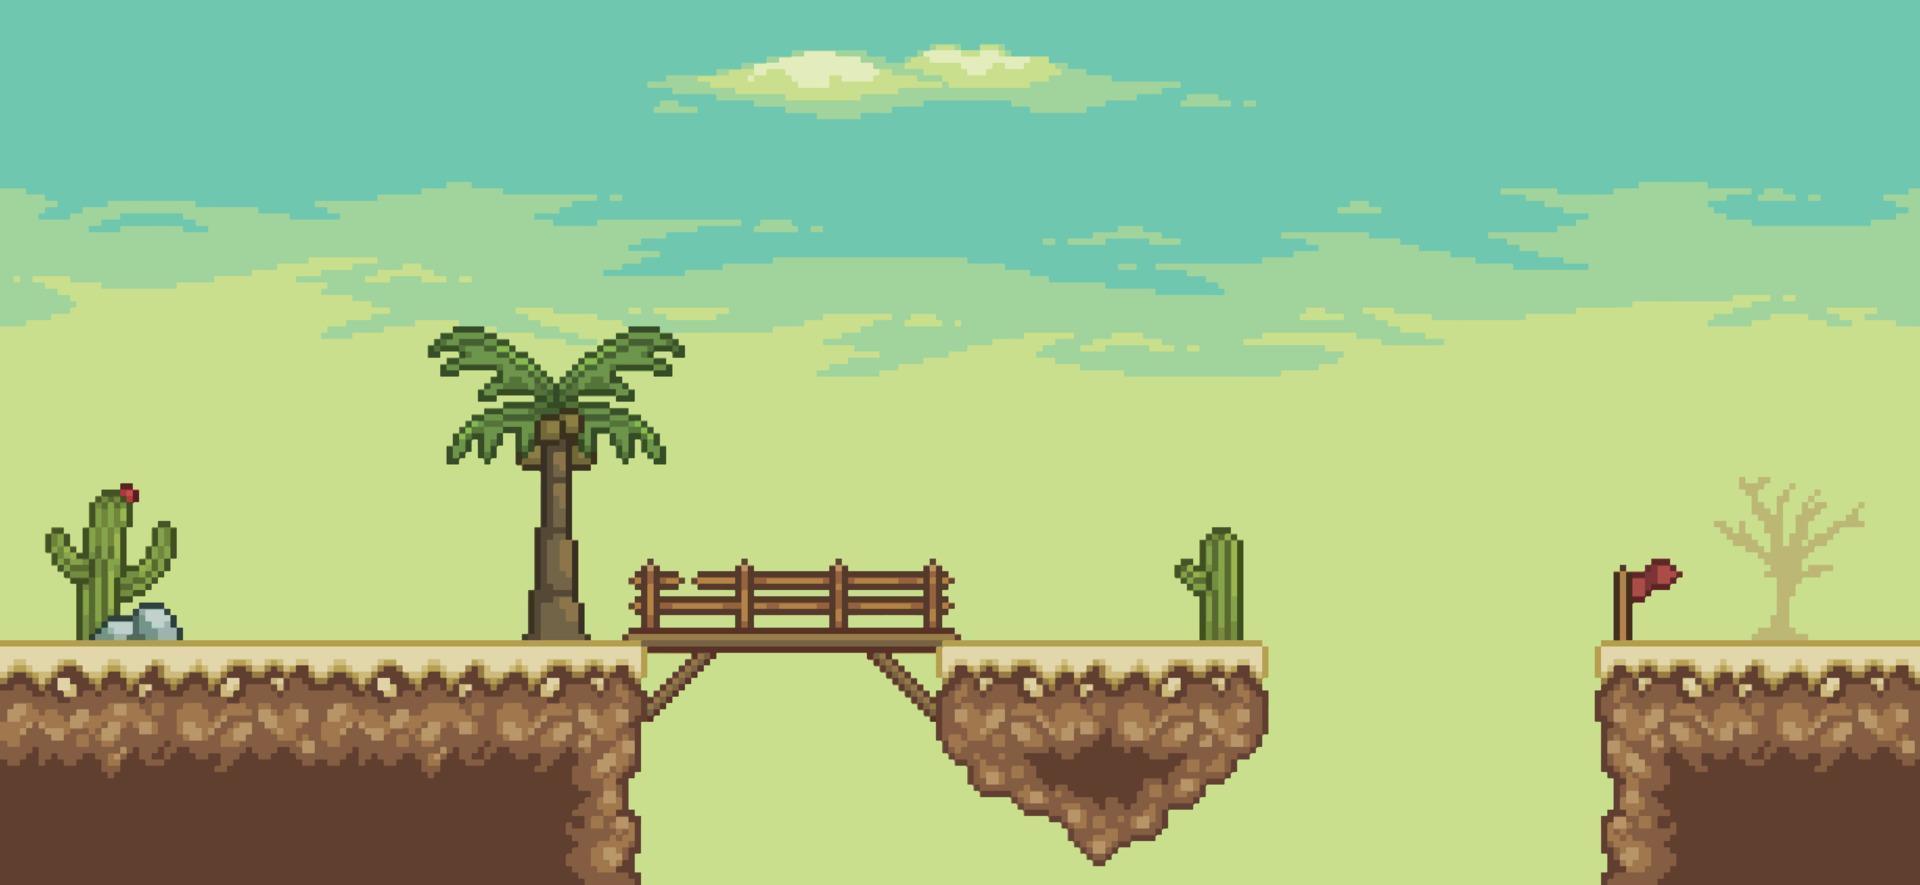 escena del juego del desierto de pixel art con, pirámide, puente, palmera, cactus, fondo de 8 bits vector